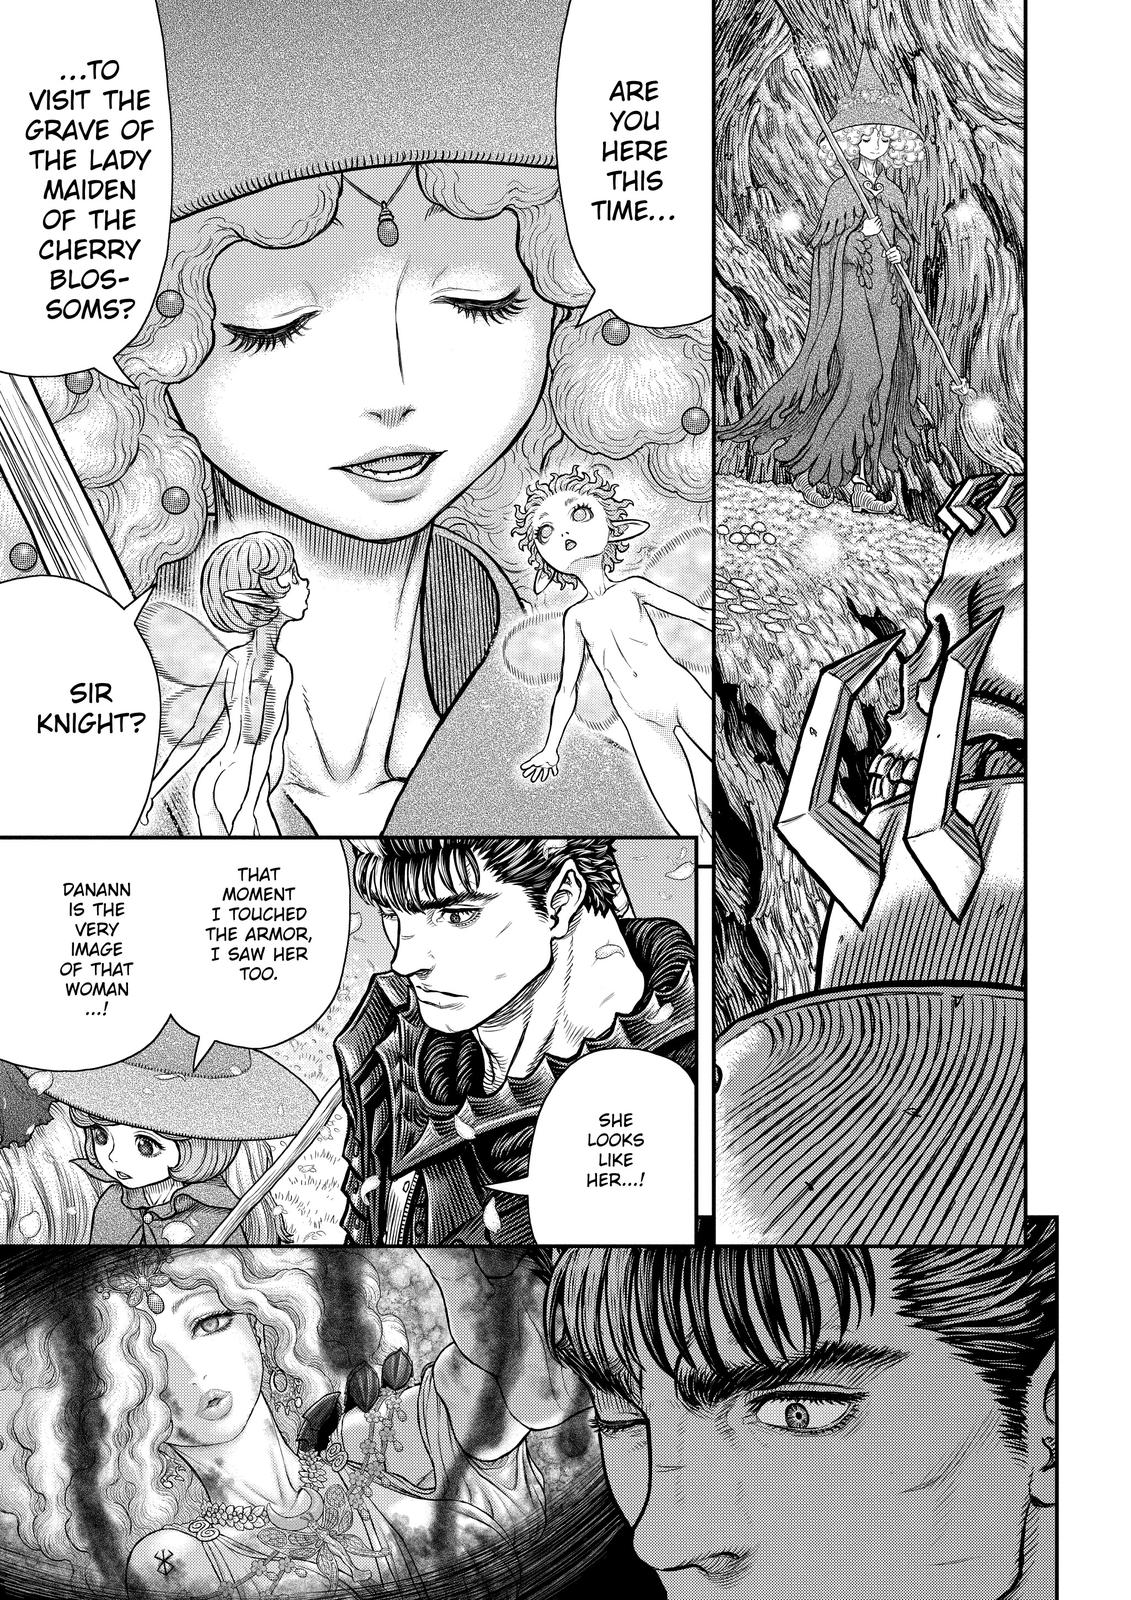 Berserk Manga Chapter 363 image 03